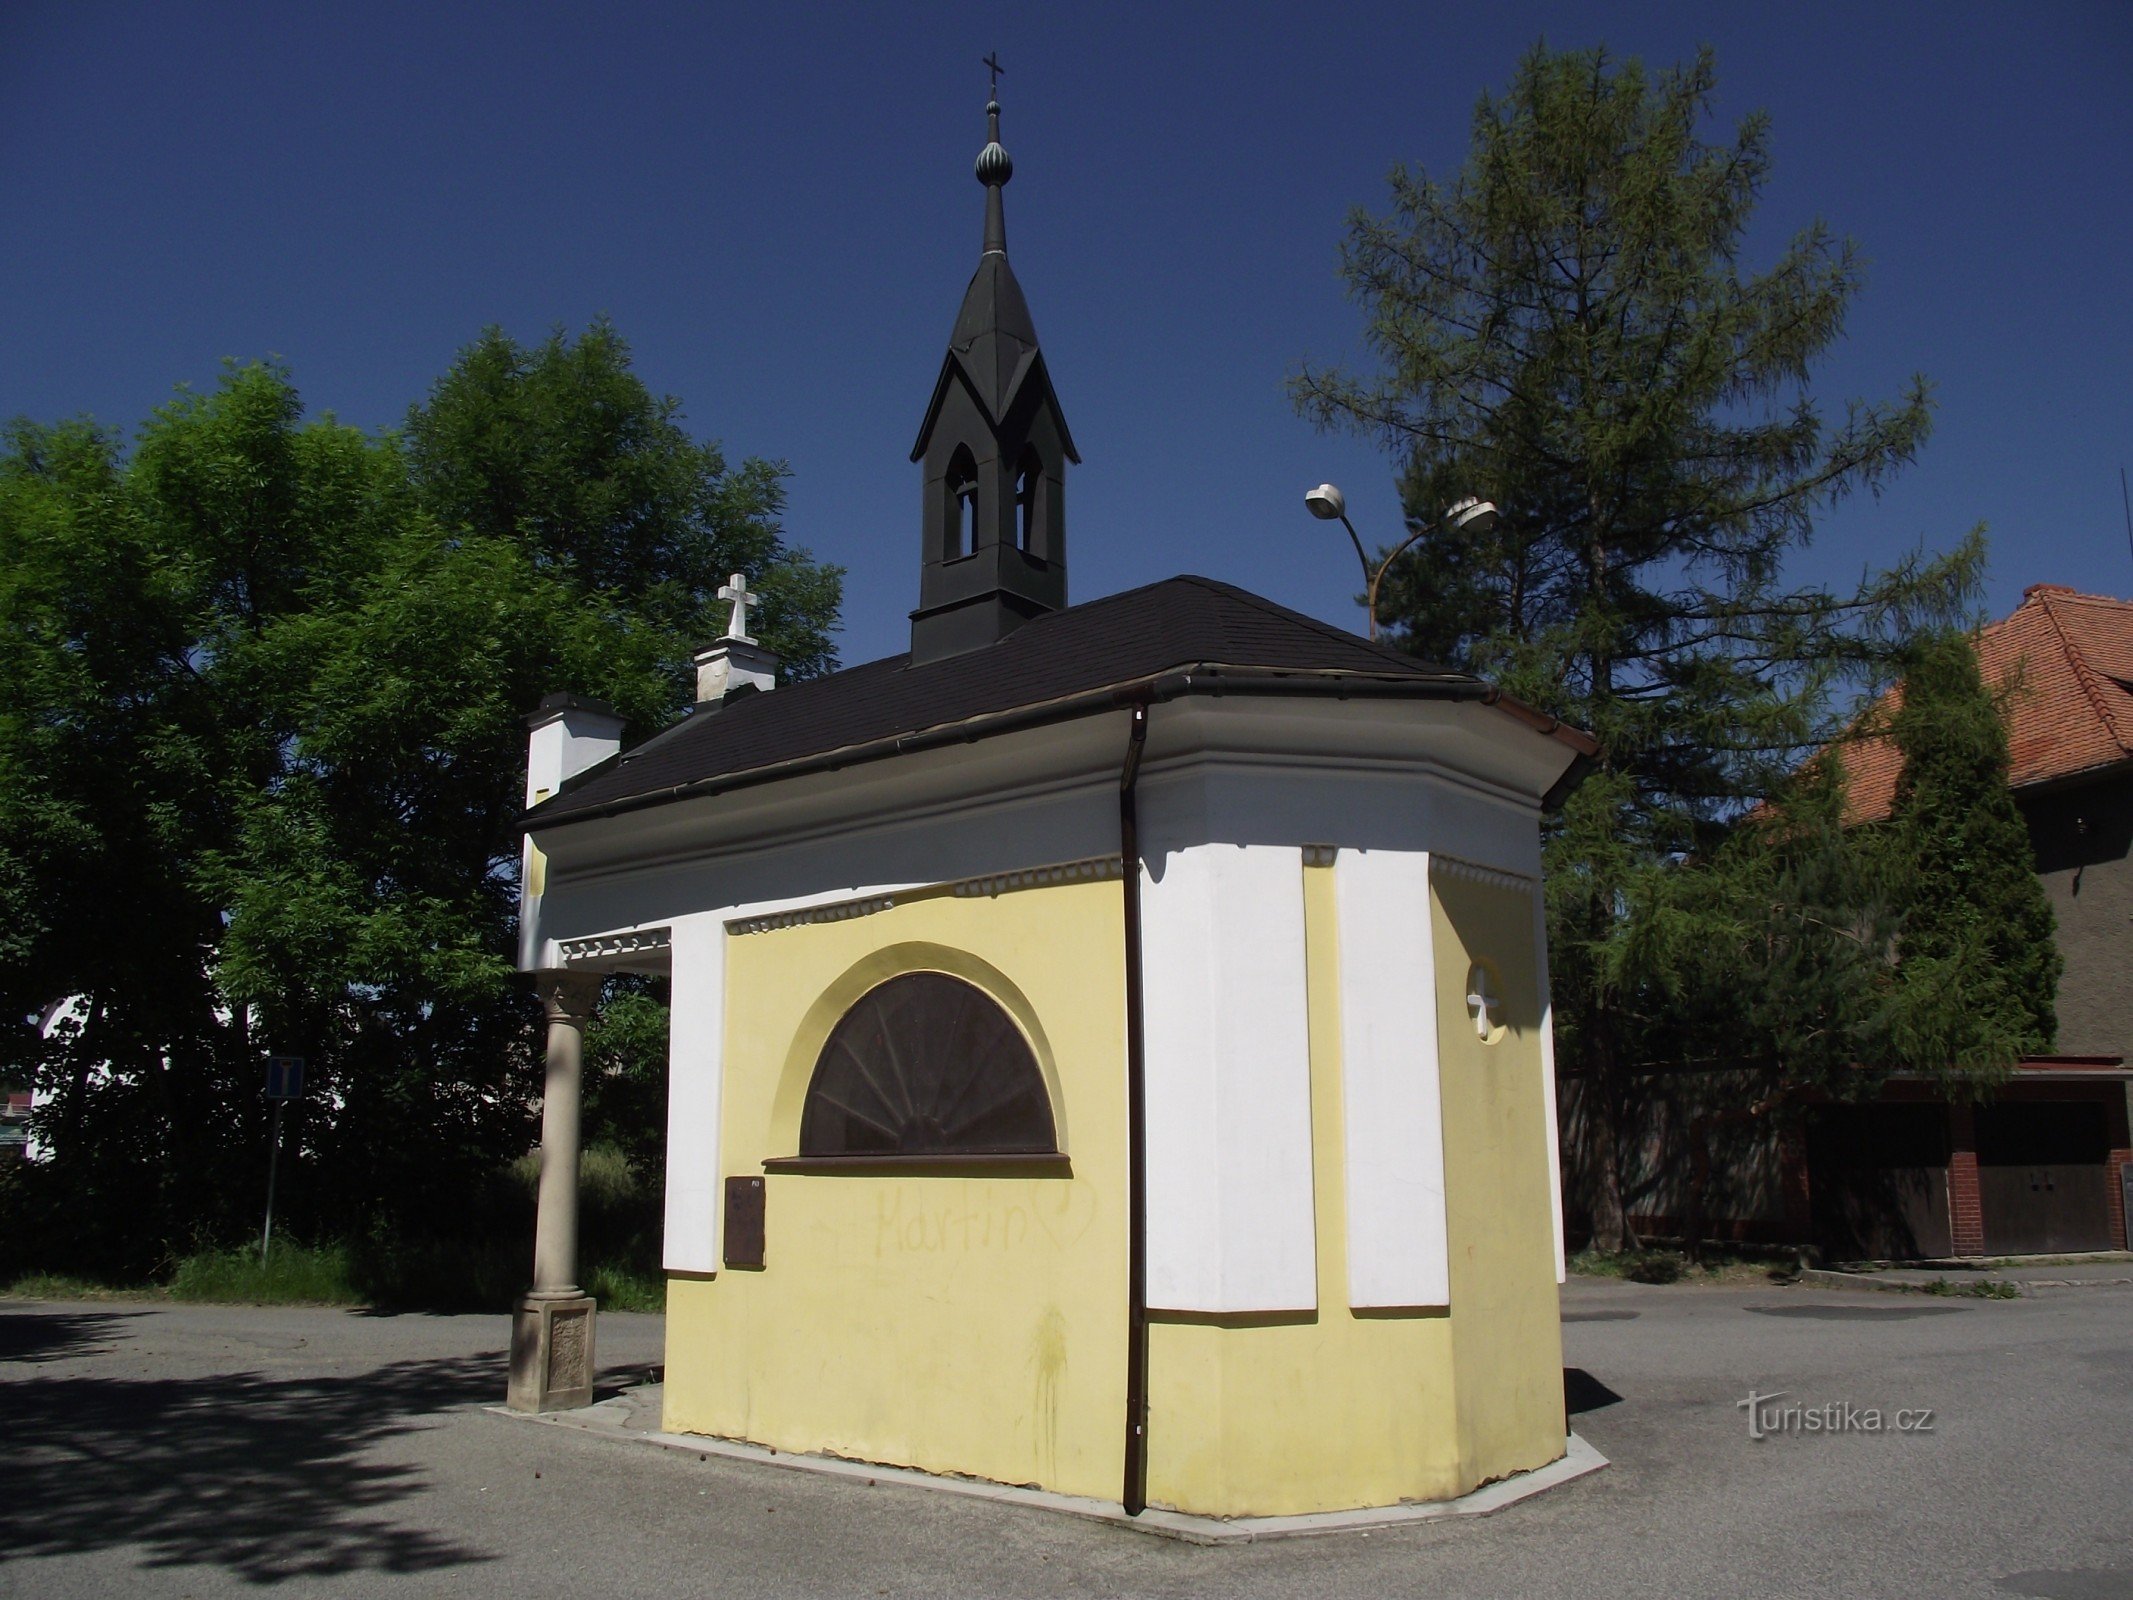 Valašské Meziříčí (Krásno) – chapelle de St. Rocha